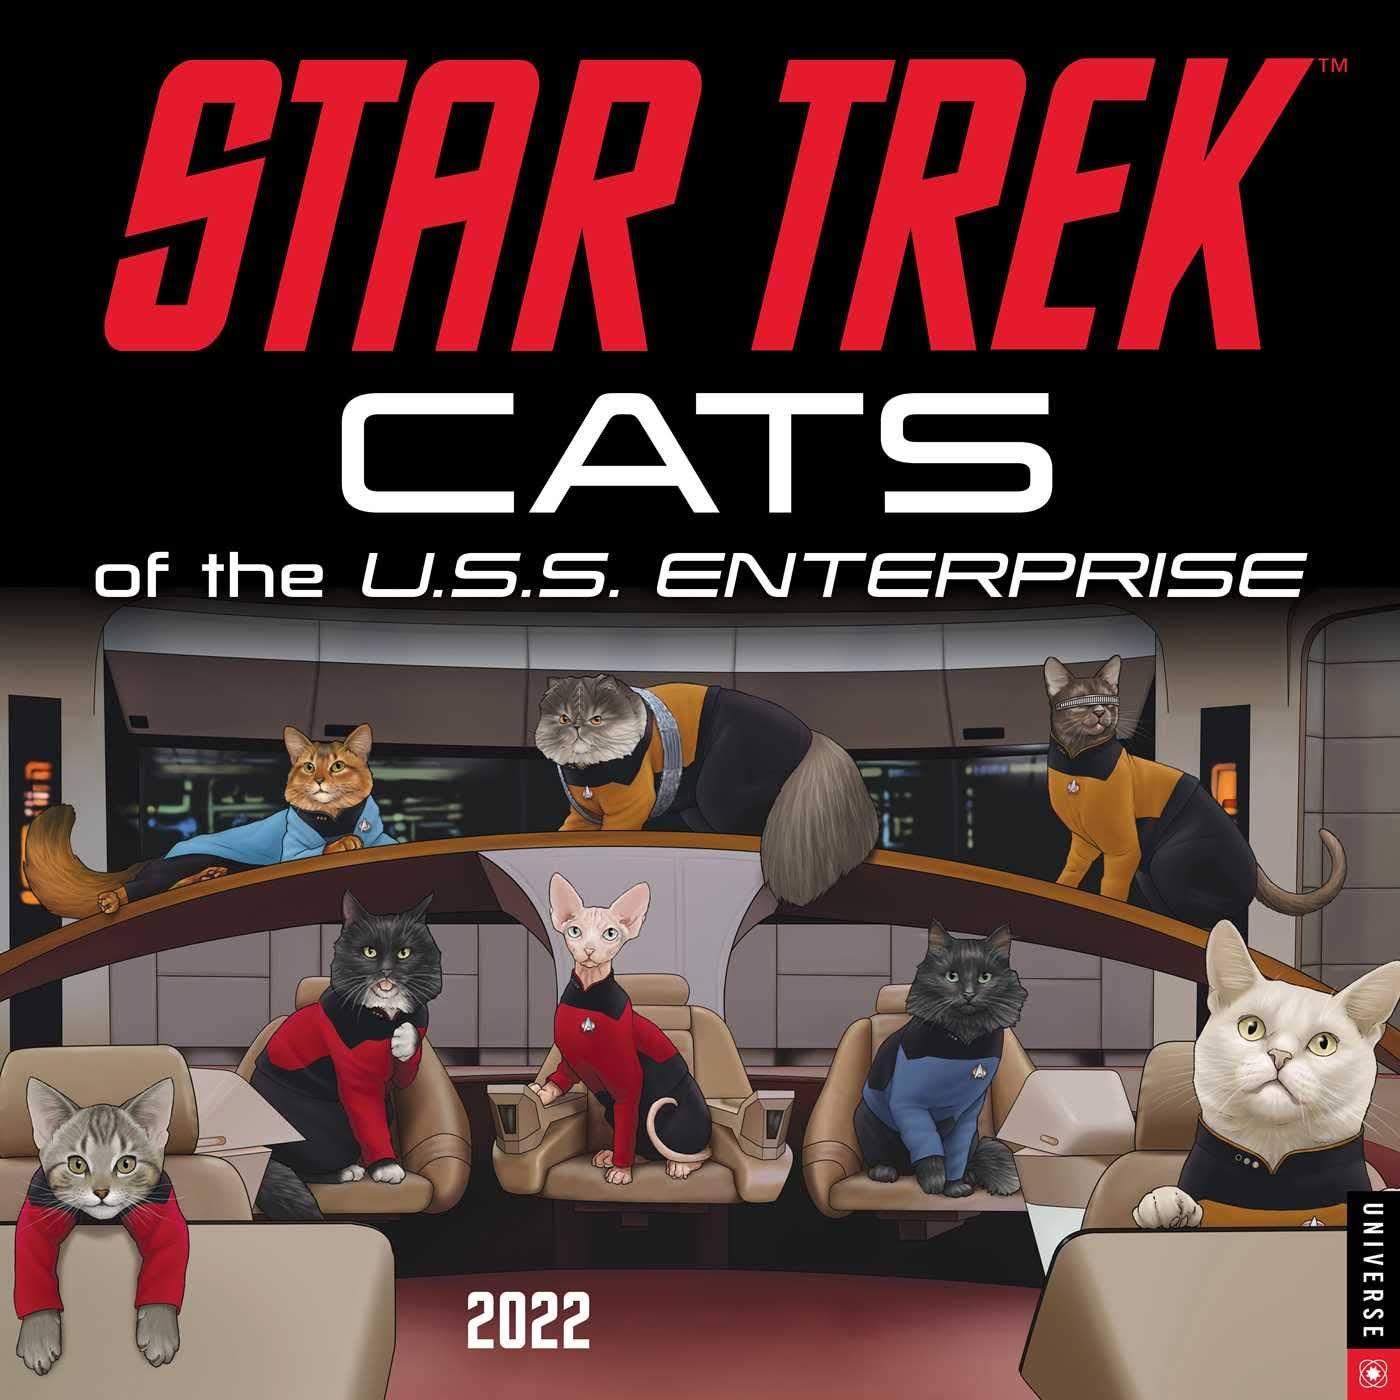 cats of star trek calendar